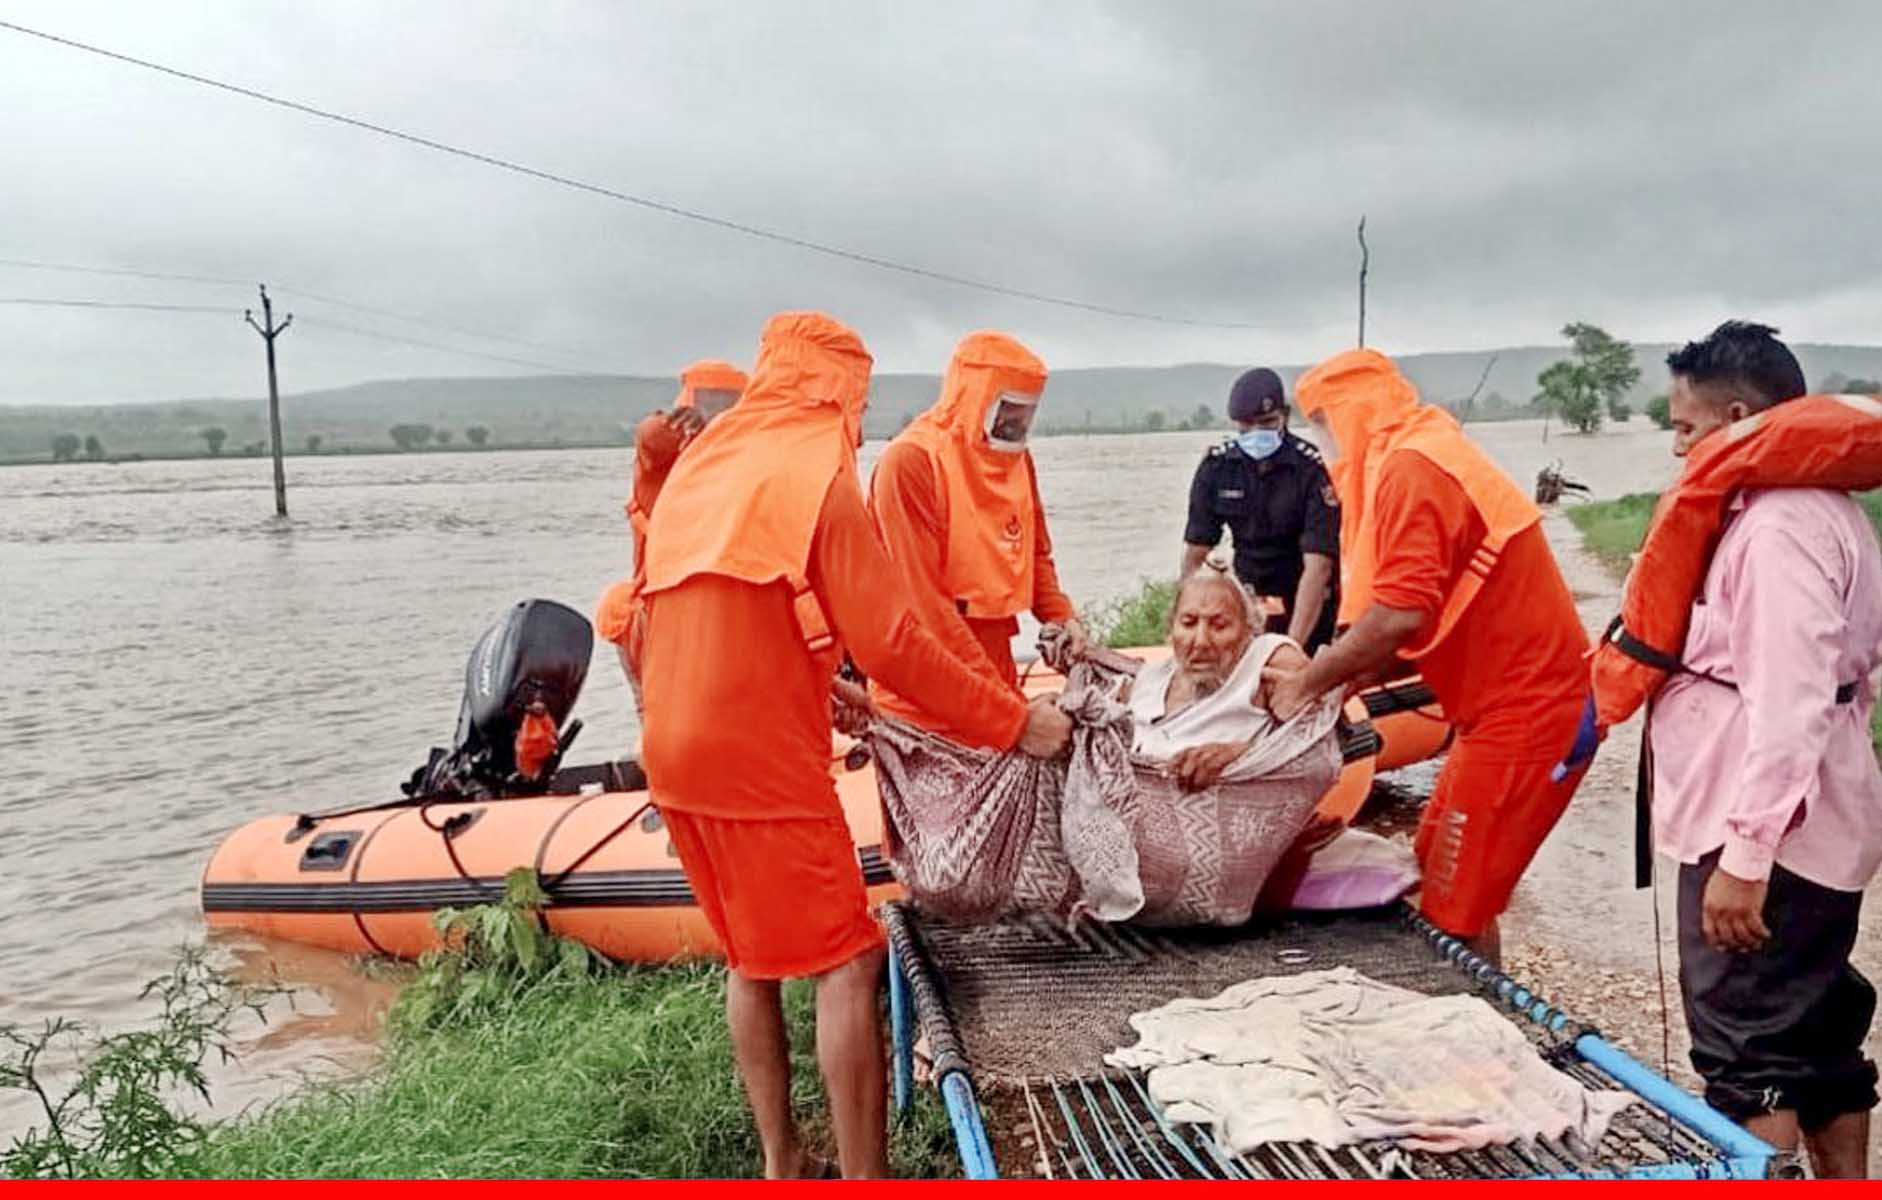 देश के कई हिस्सों में बाढ़ से स्थिति बिगड़ी, मप्र, राजस्थान, बंगाल समेत तमाम राज्यों का हाल